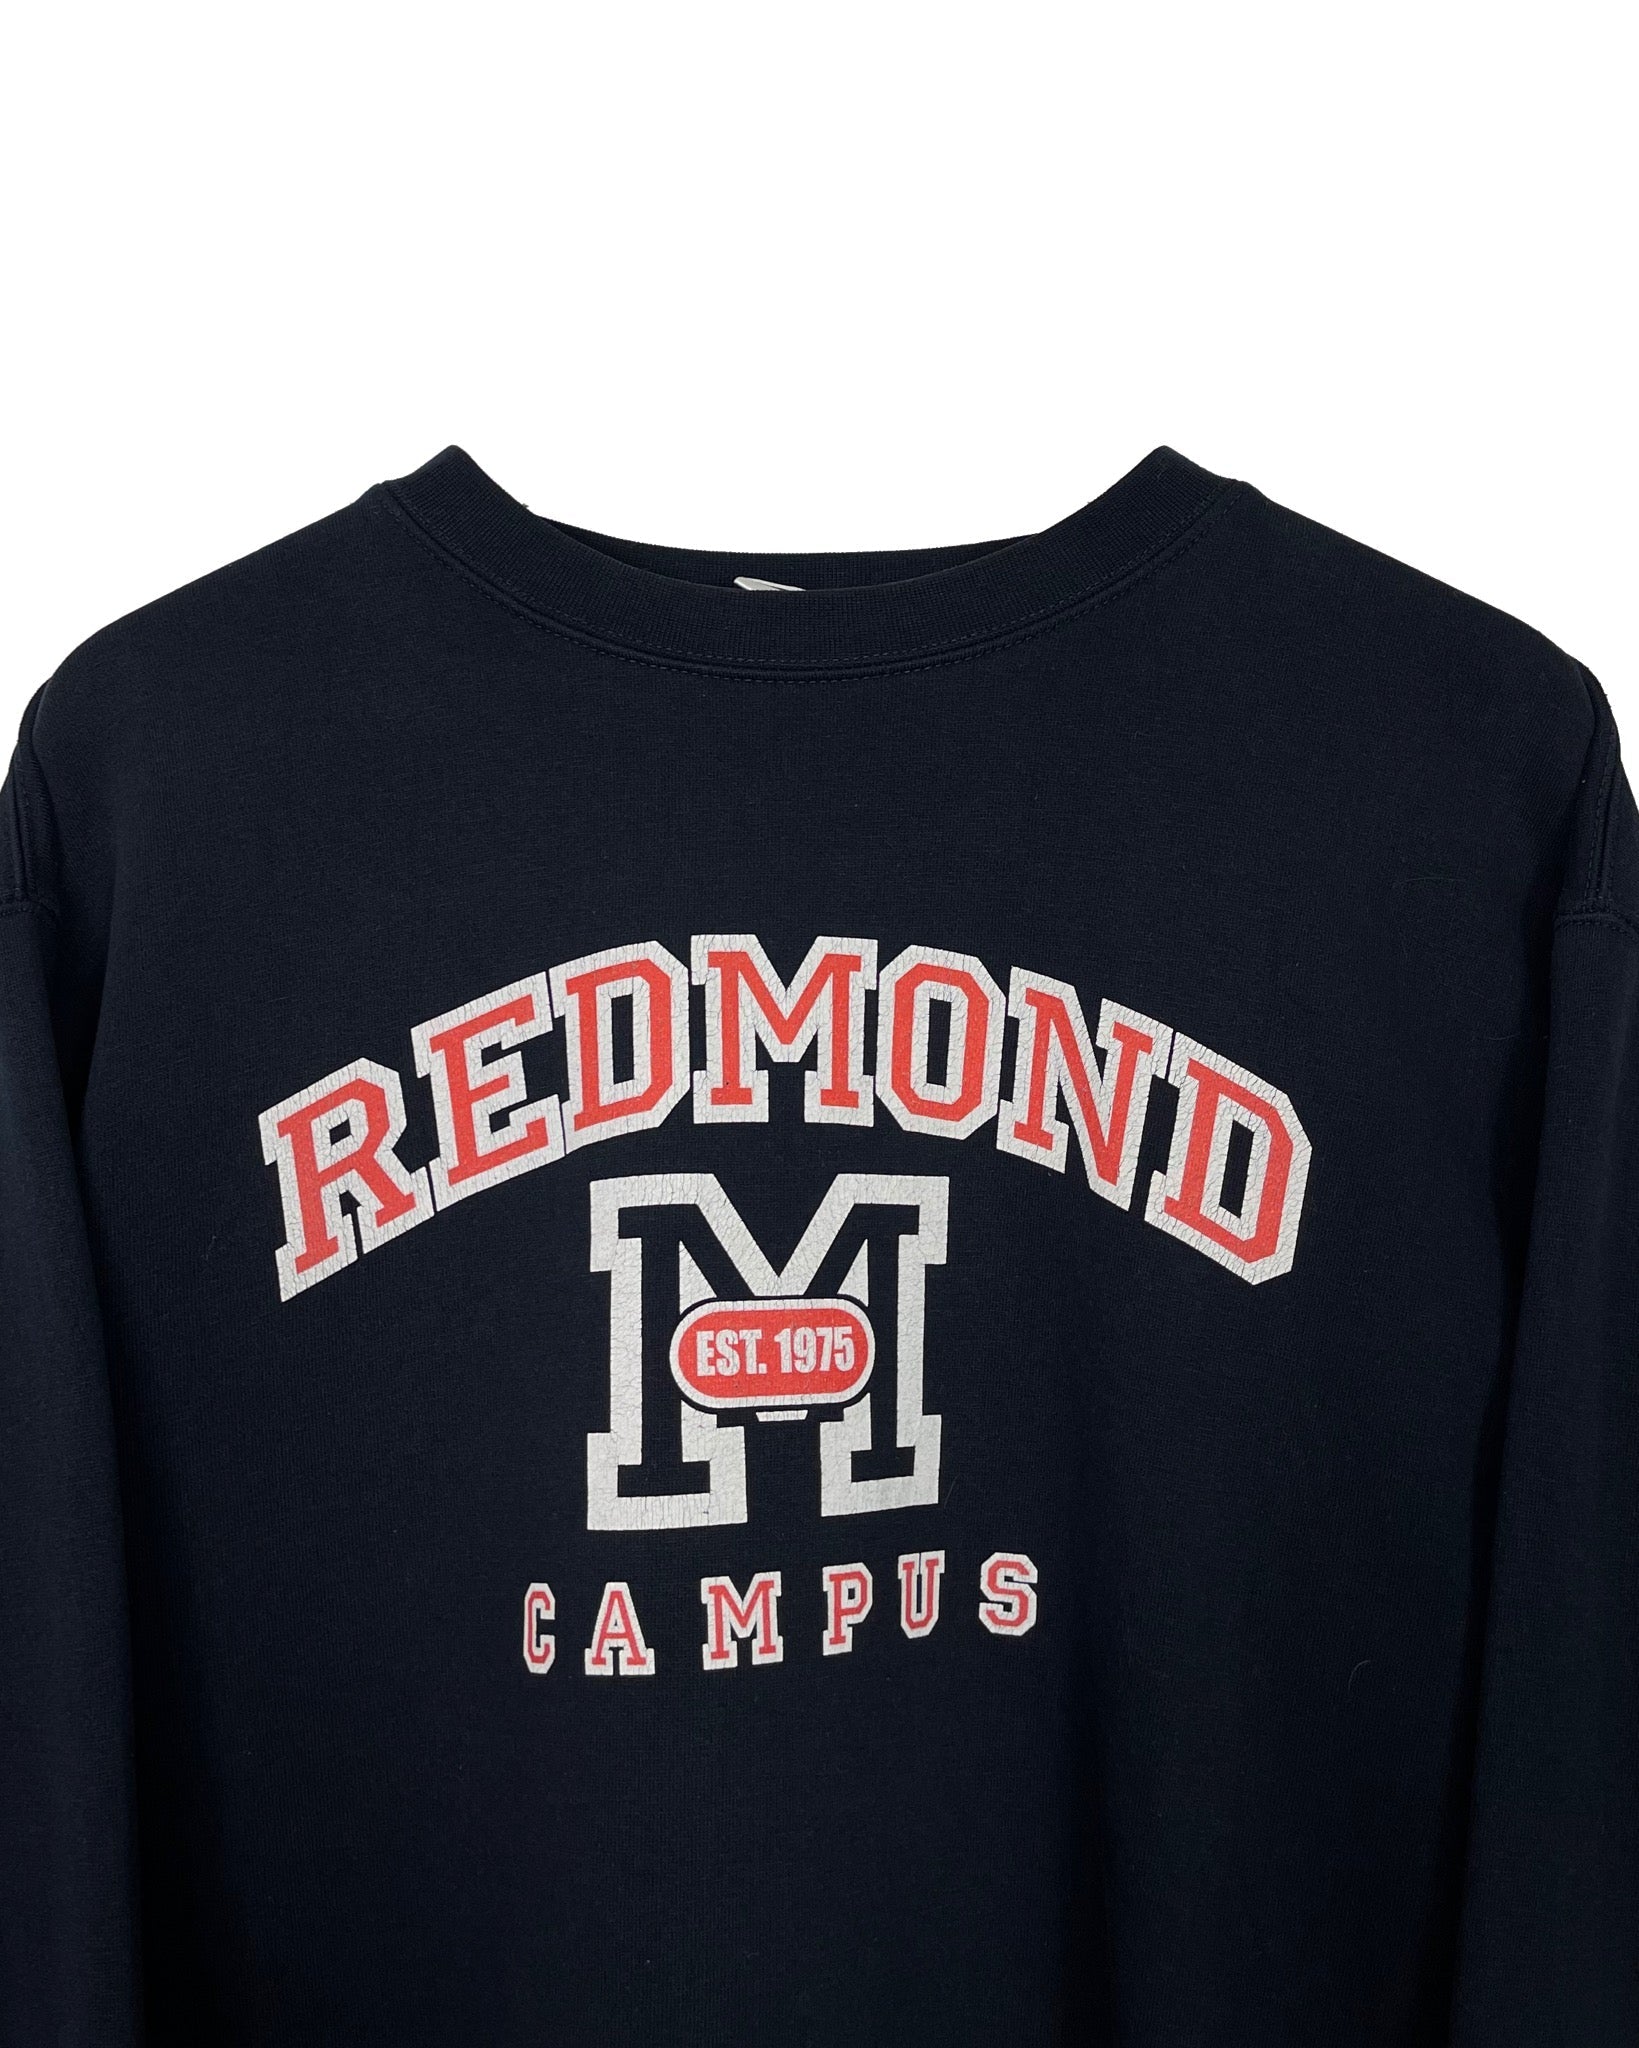  Sweatshirt Reebok Sweat - Redmond Campus - S - PLOMOSTORE